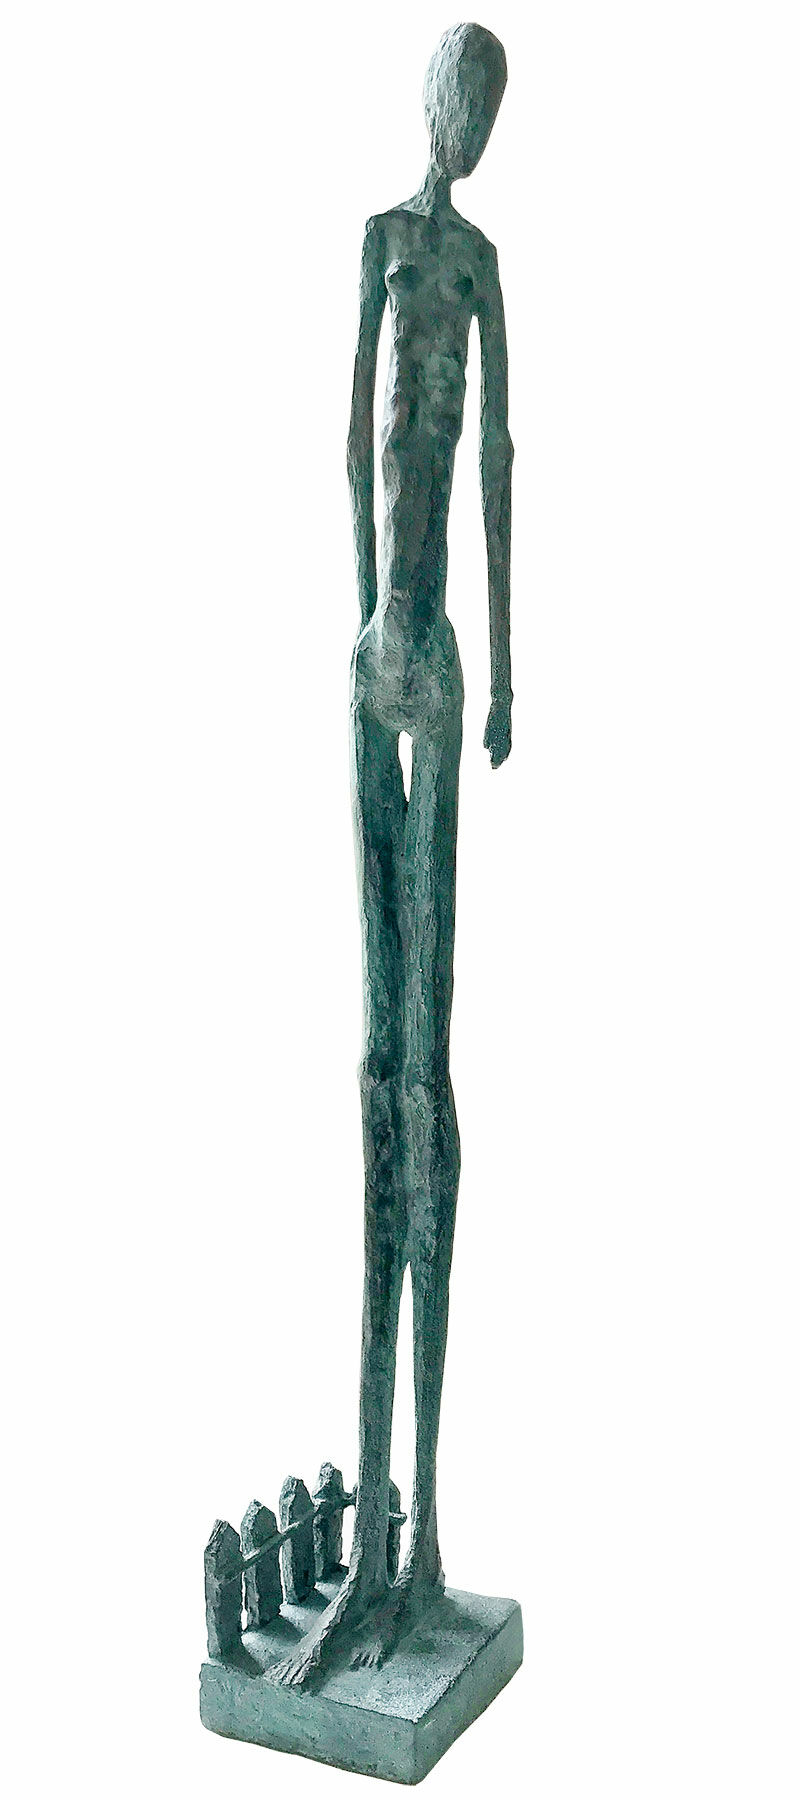 Skulptur "Kvinde i haven" (2021), bronze von Sibylle Waldhausen